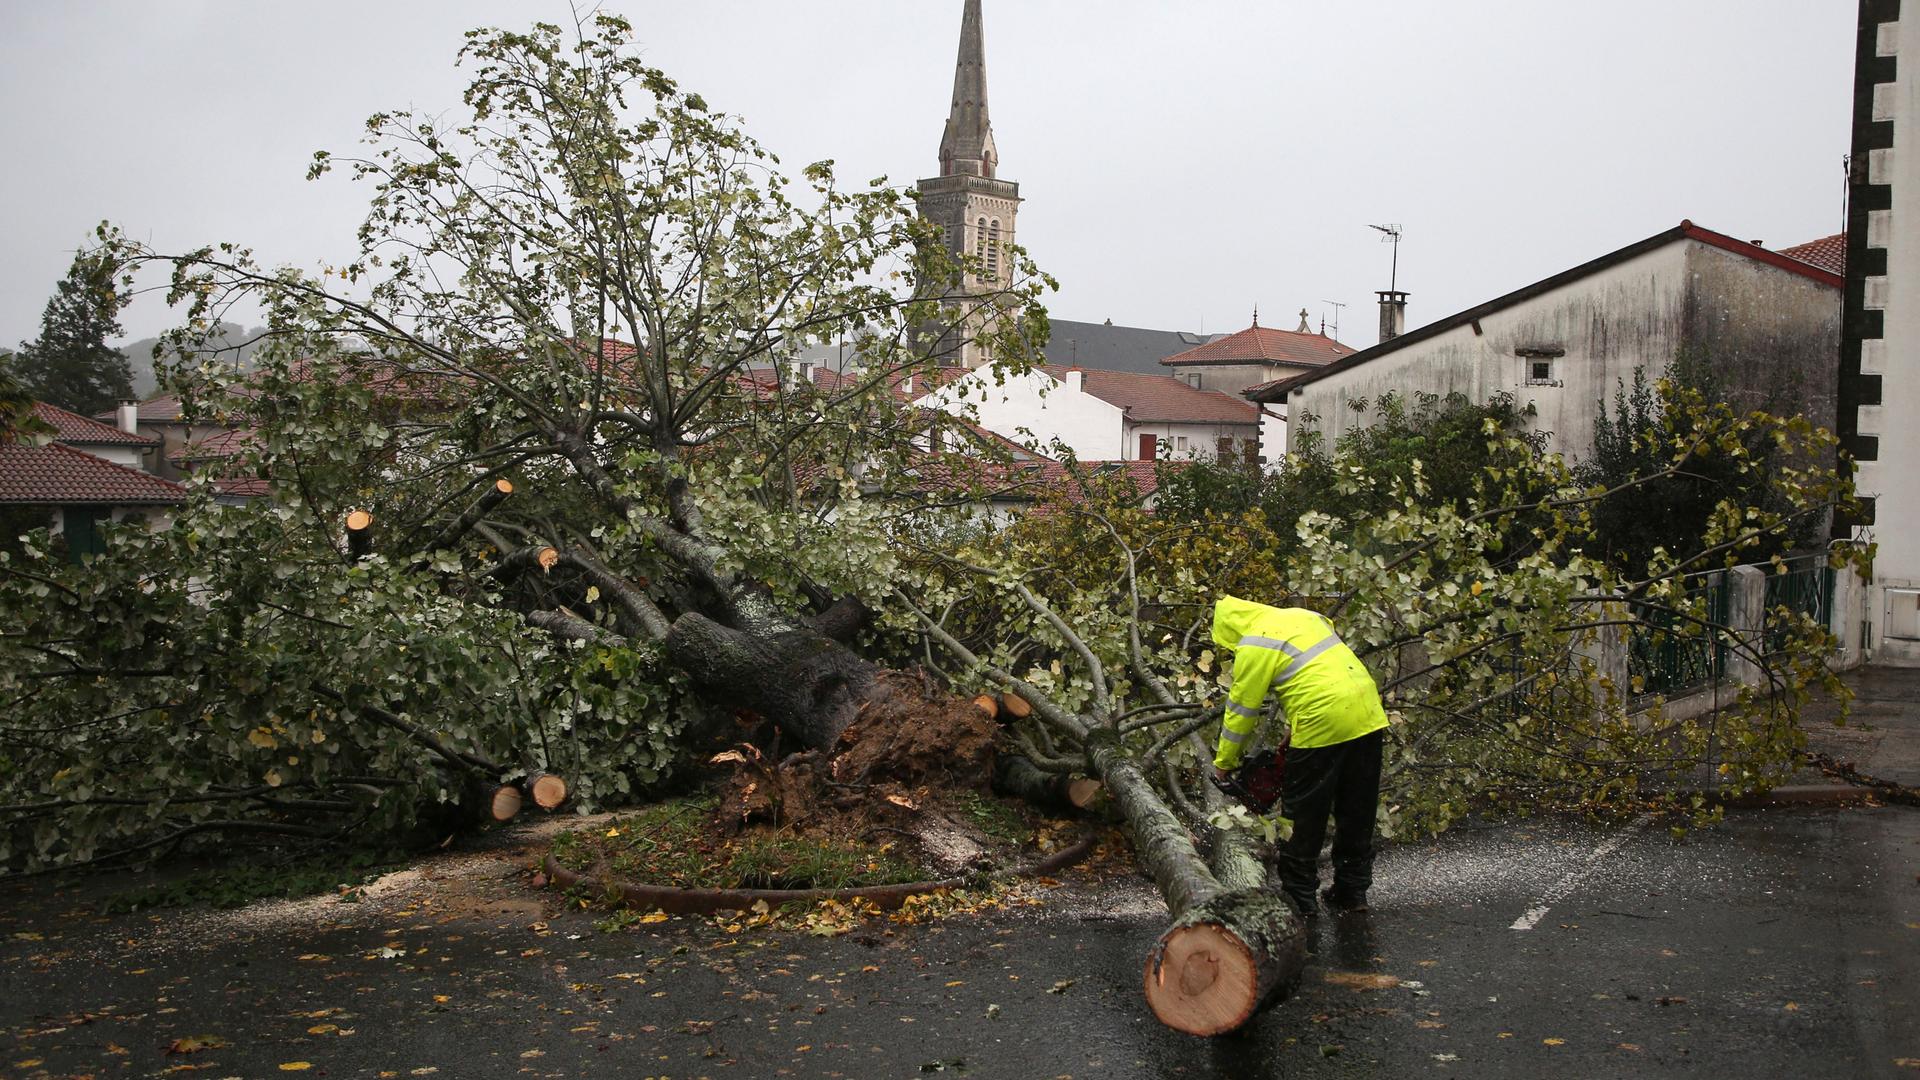 Frankreich, Hasparren: Ein Mann zersägt einen Baum, der auf einen Parkplatz gestürzt ist.